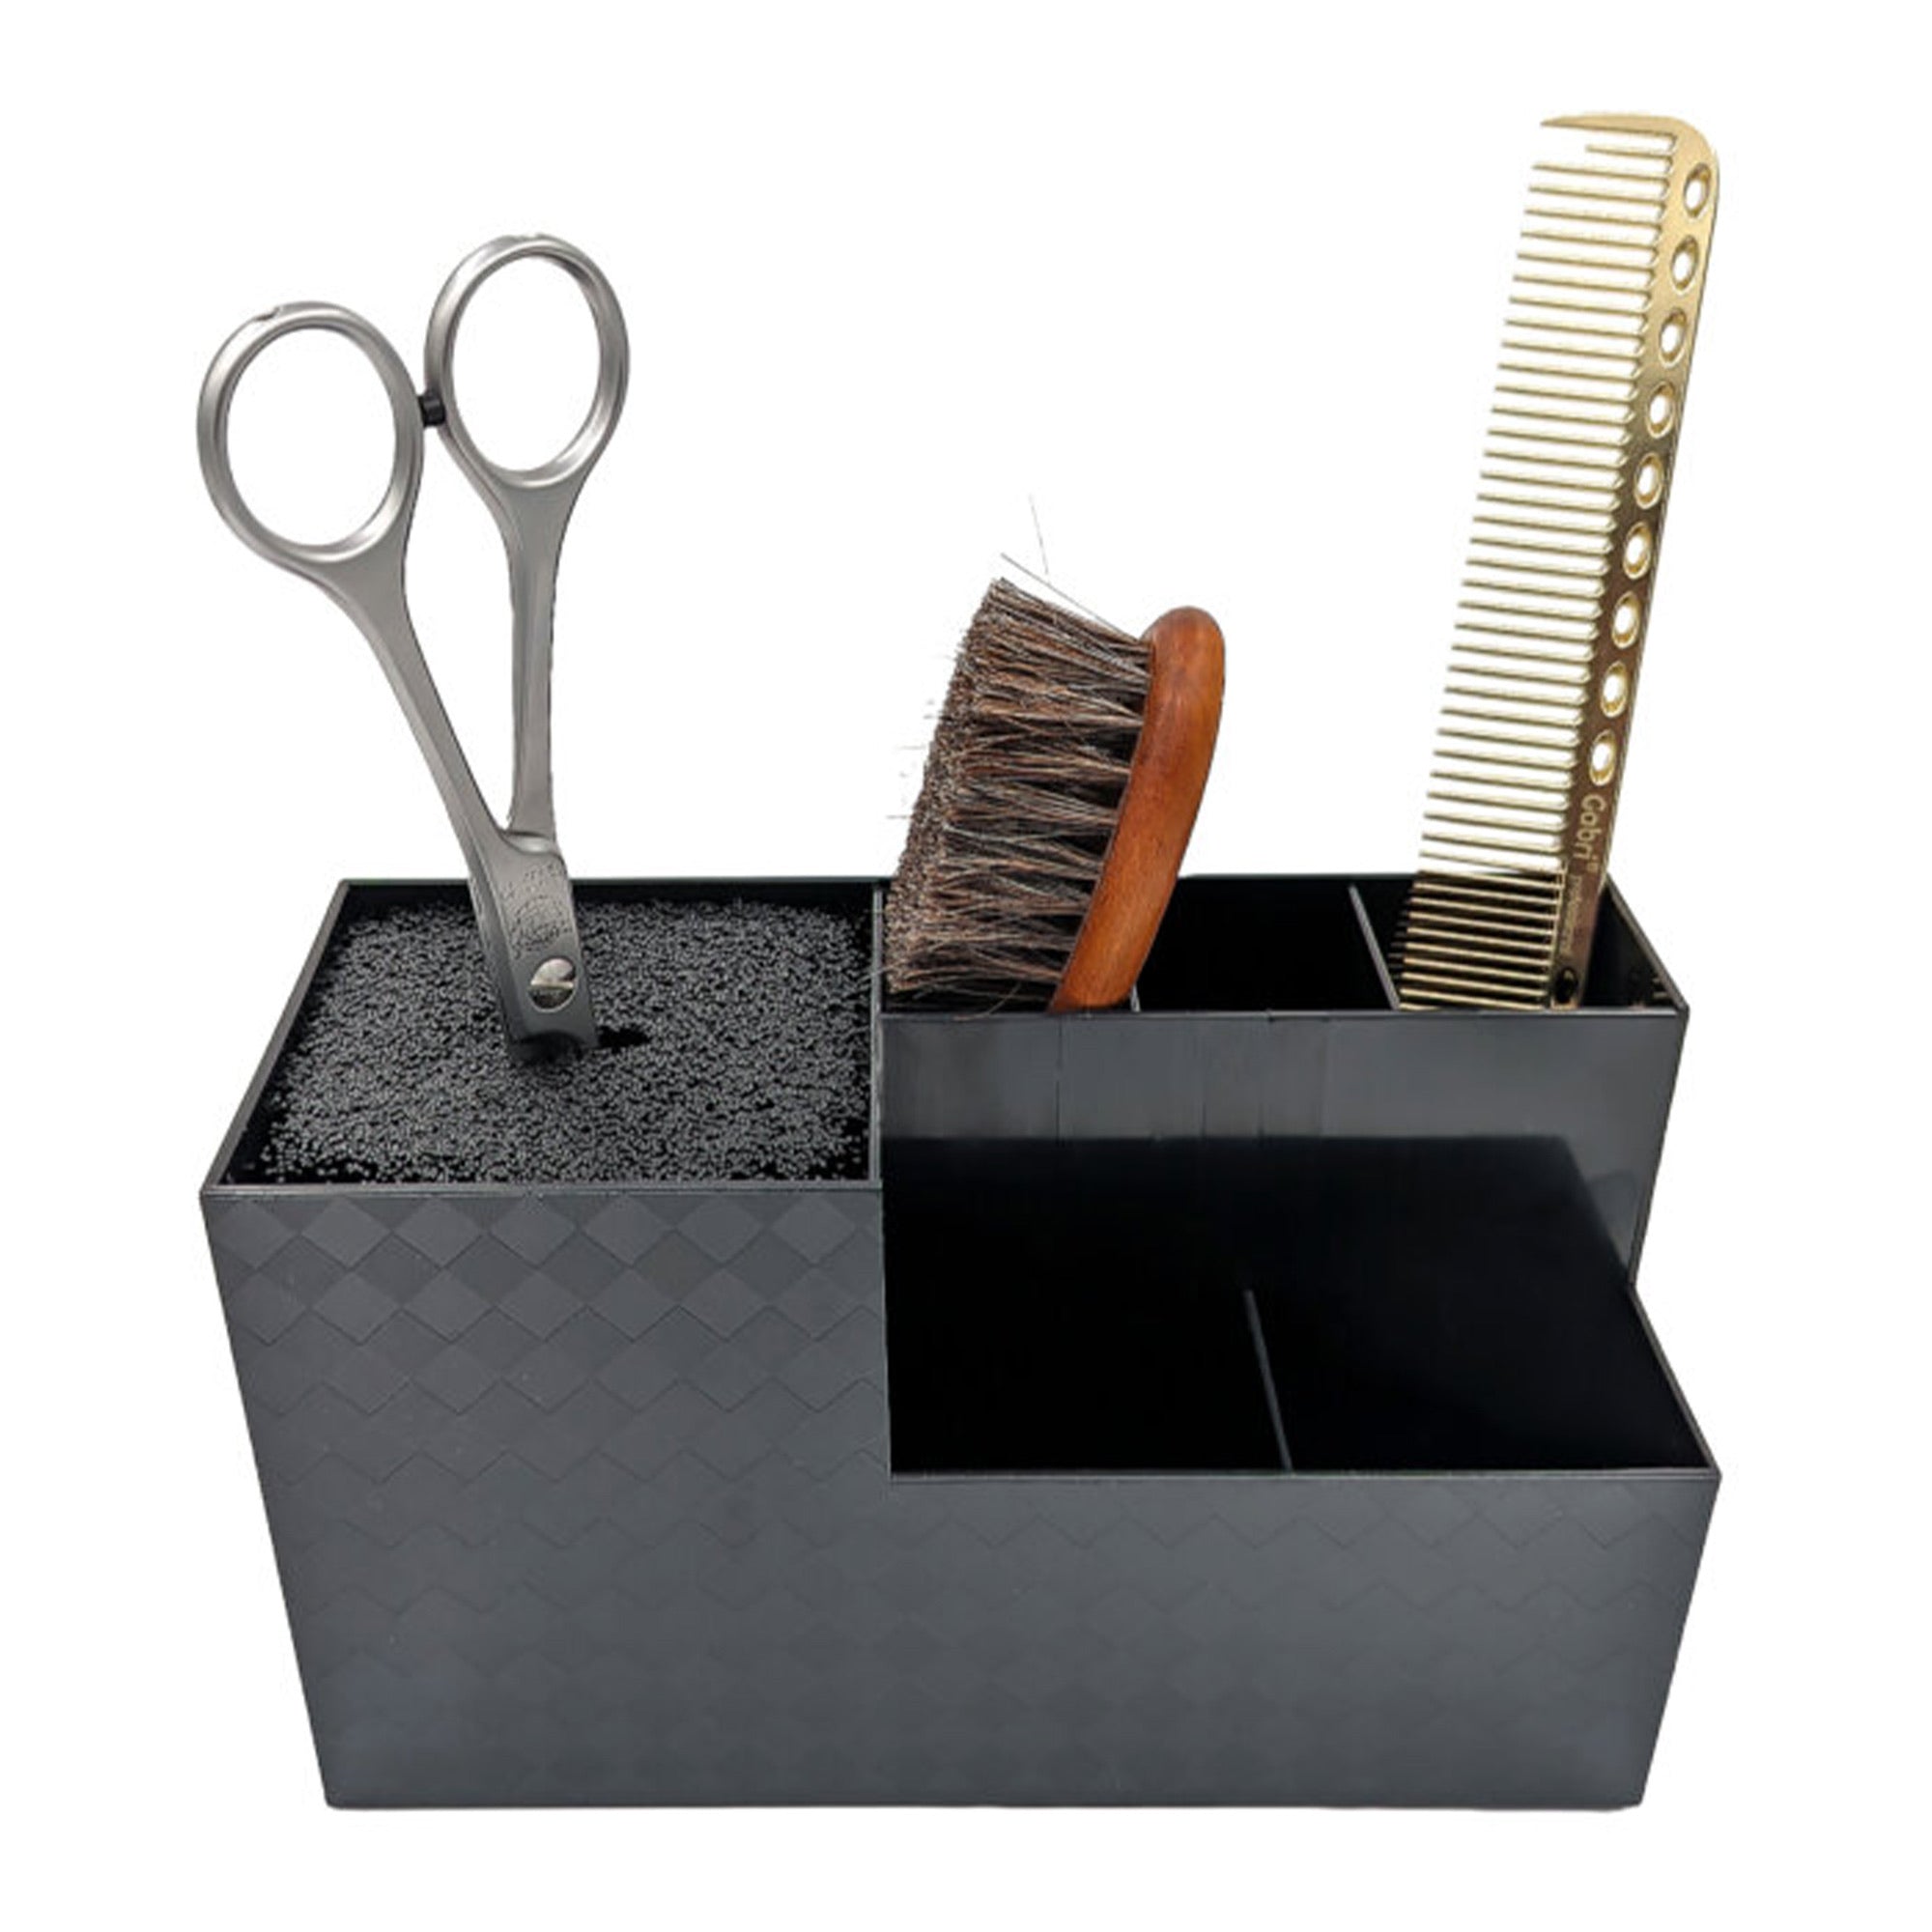 Eson - Scissor & Brush Holder Non-Slip Storage Box (Black)